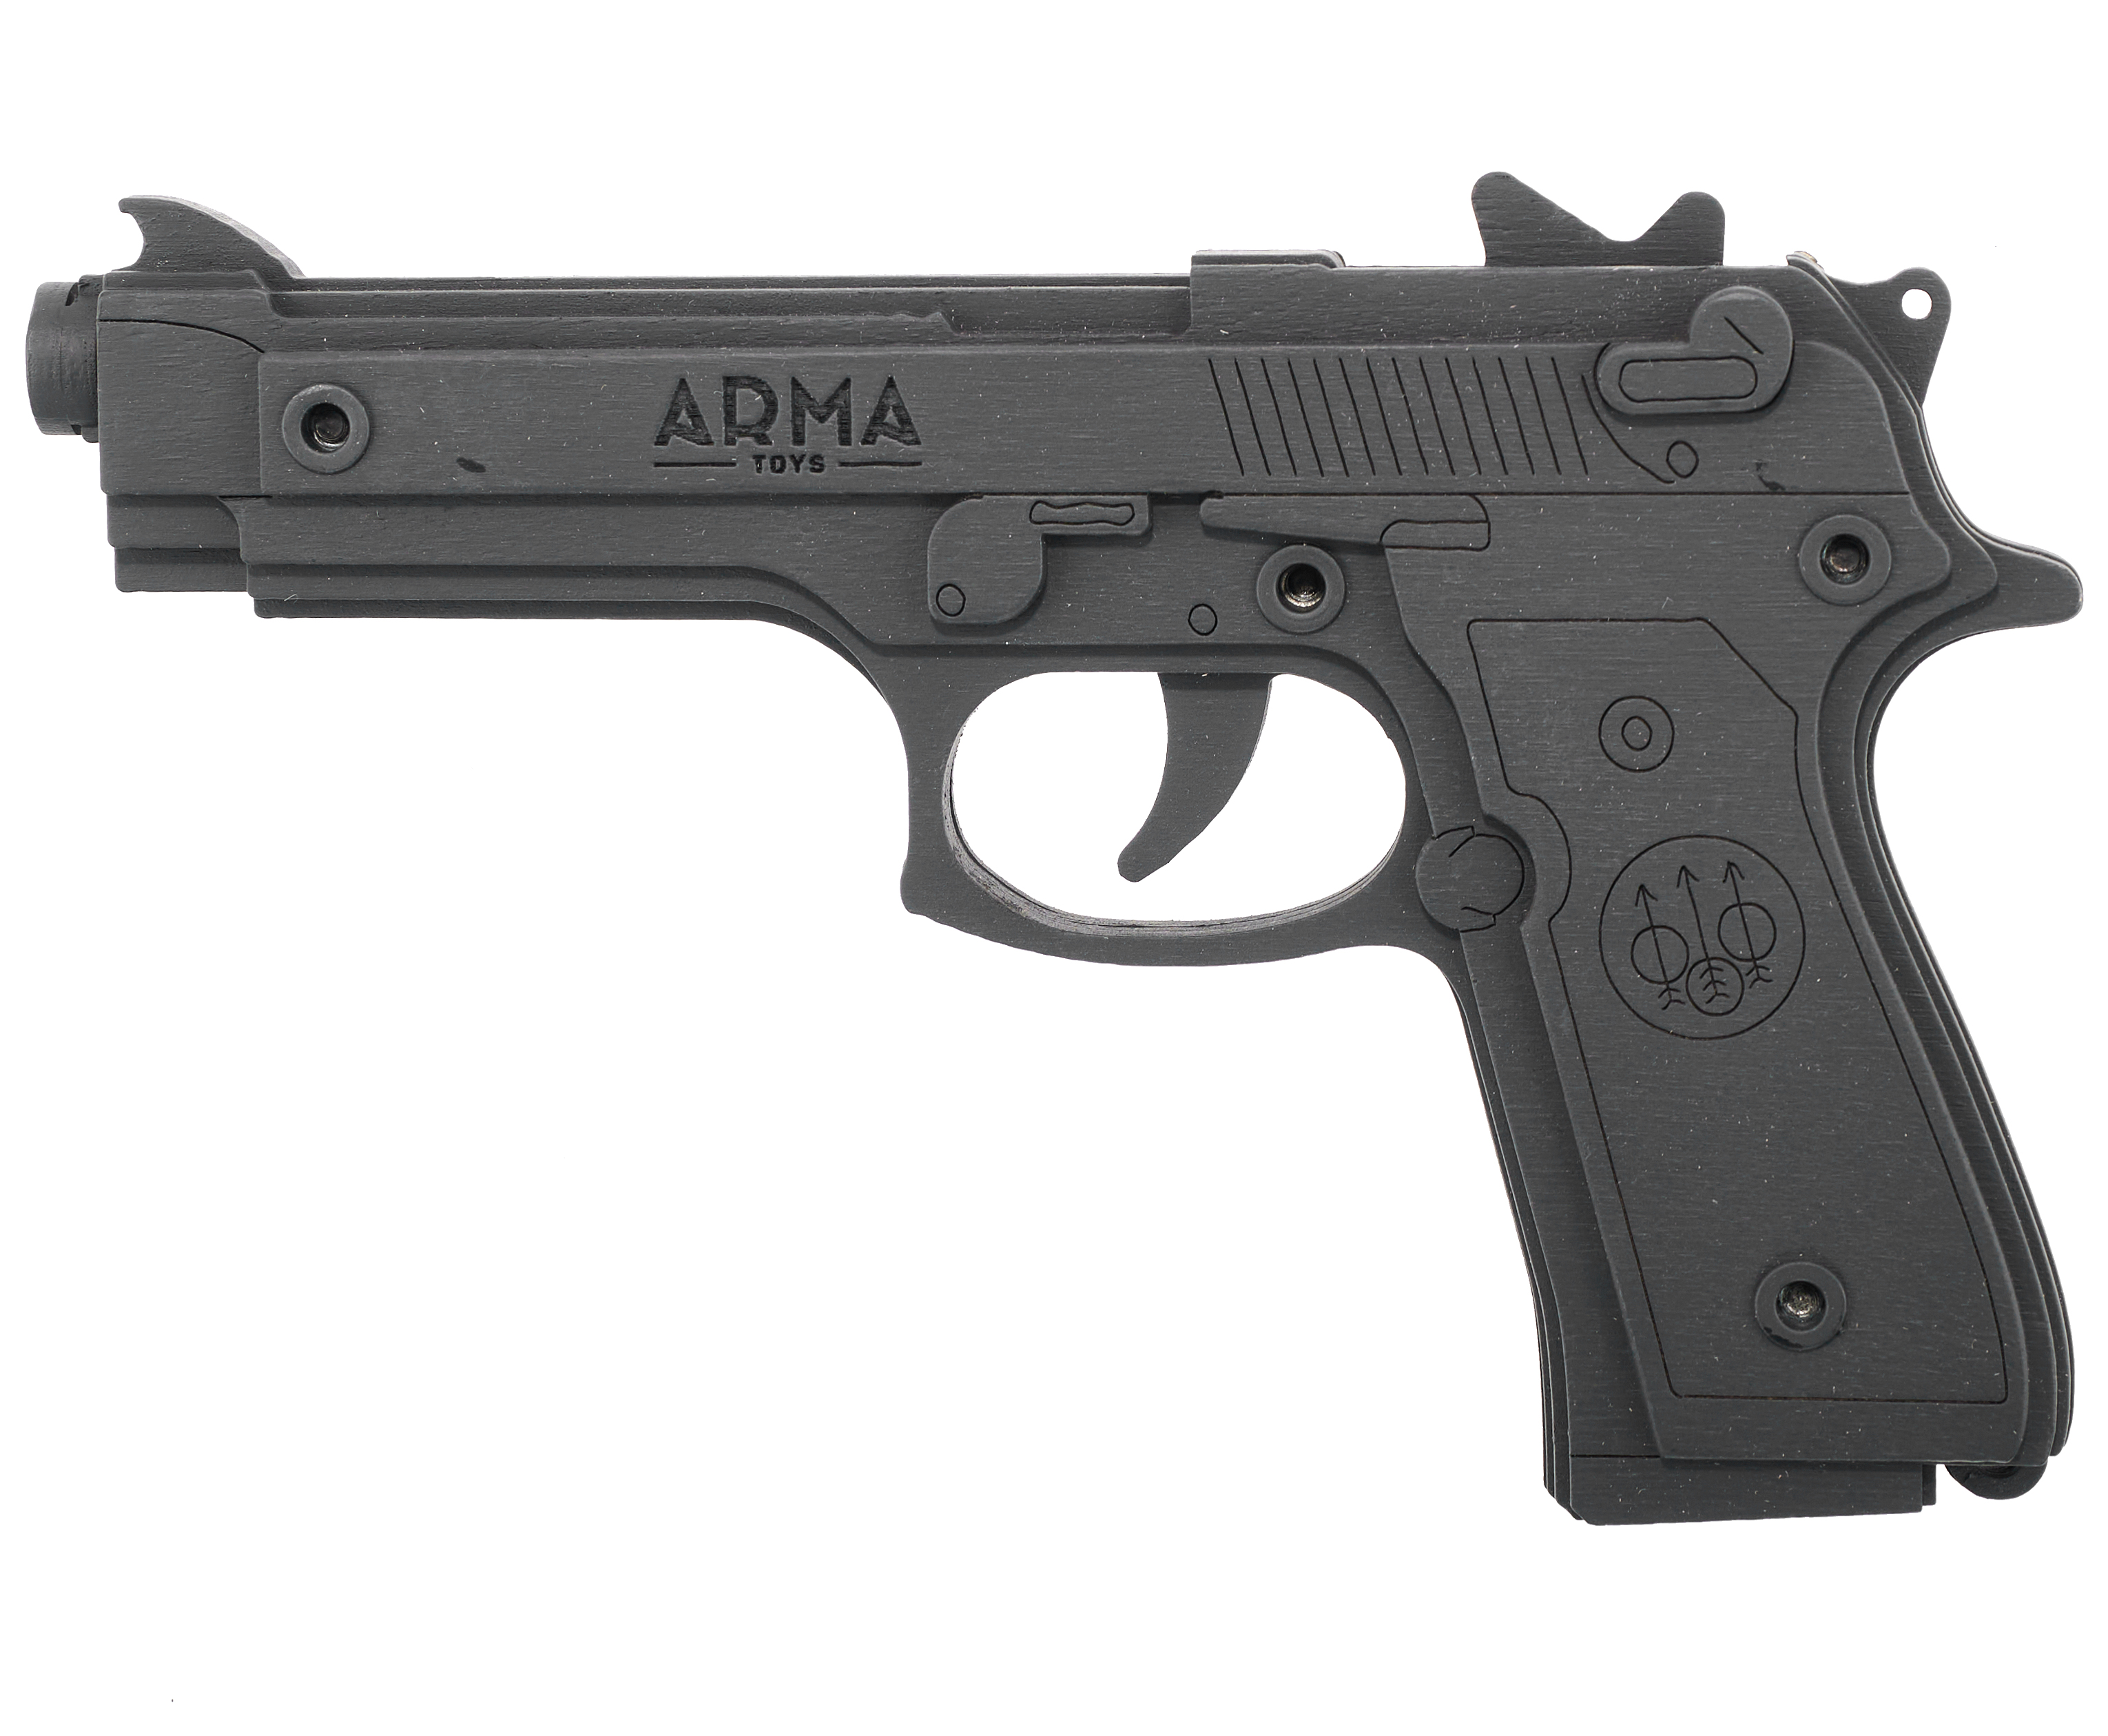 Резинкострел игрушечный Arma toys пистолет Беретта макет, AT034, окрашенный